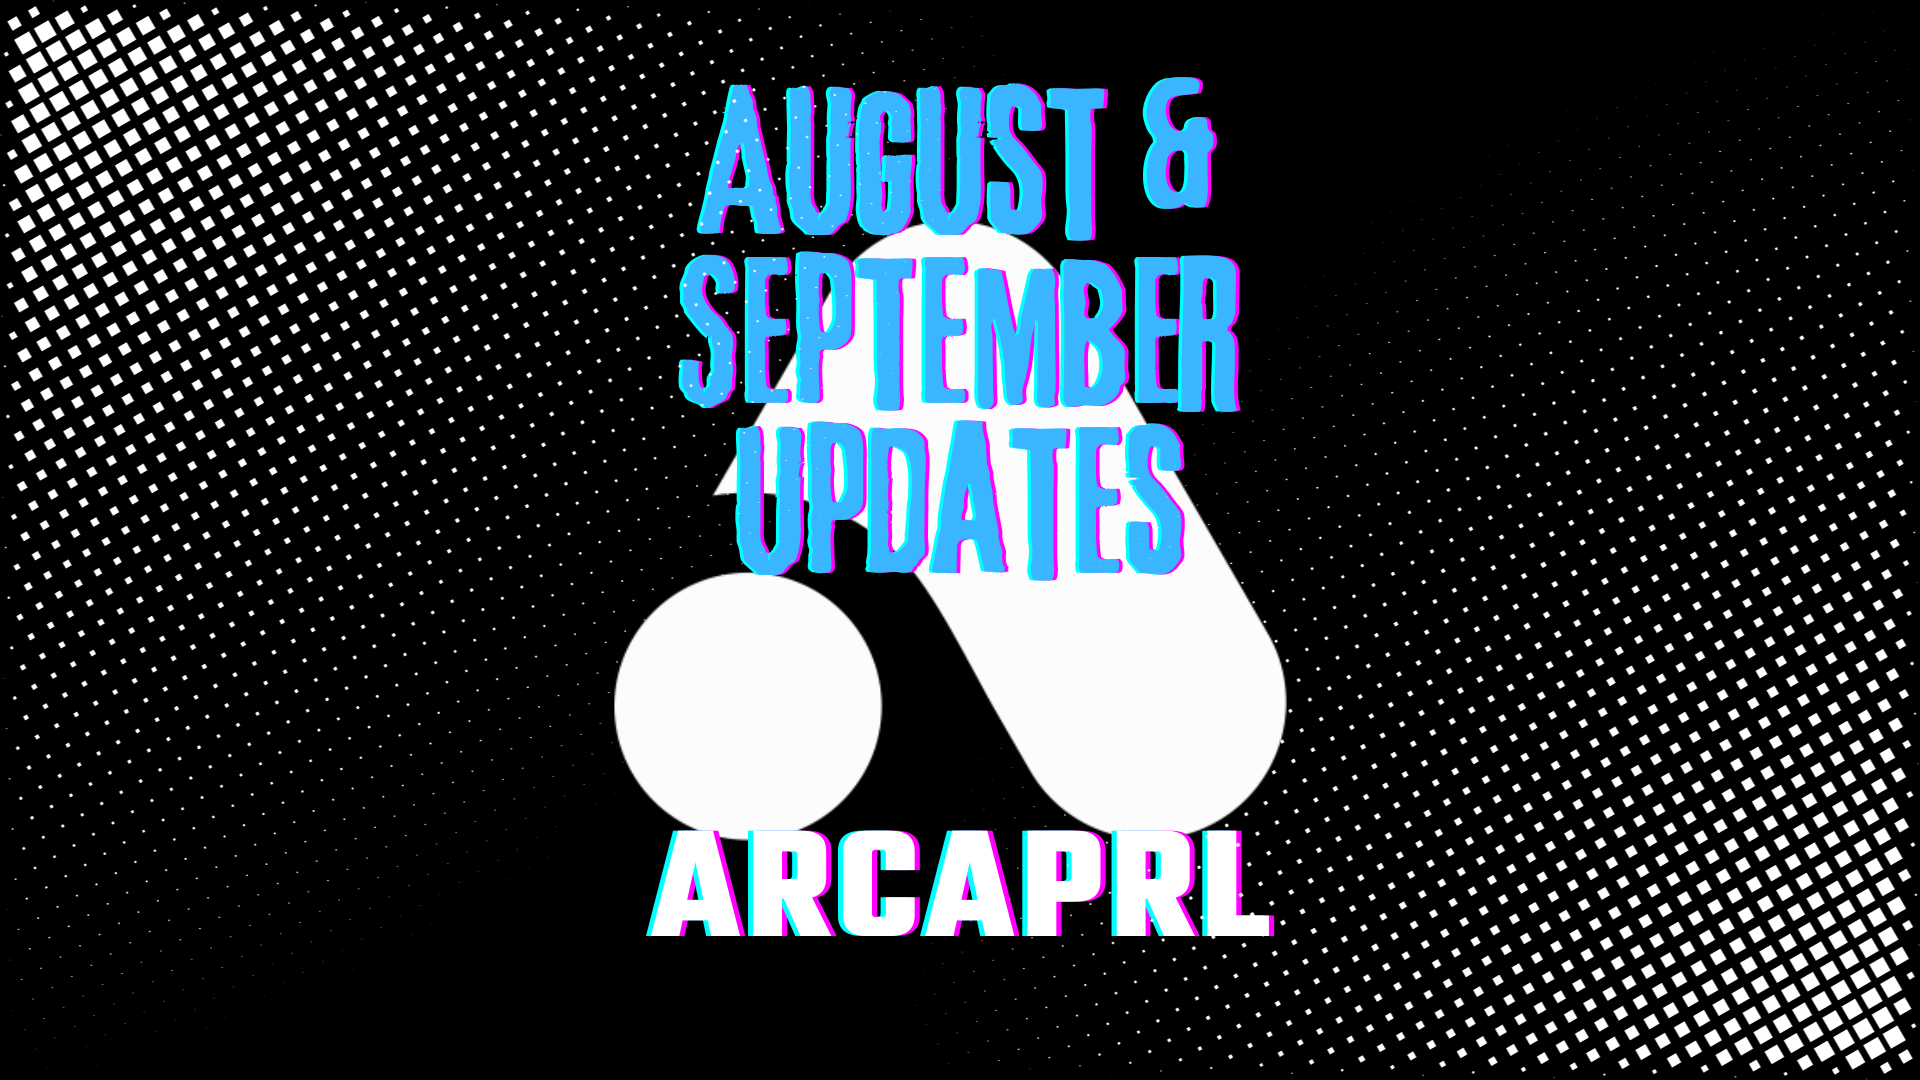 August & September Updates